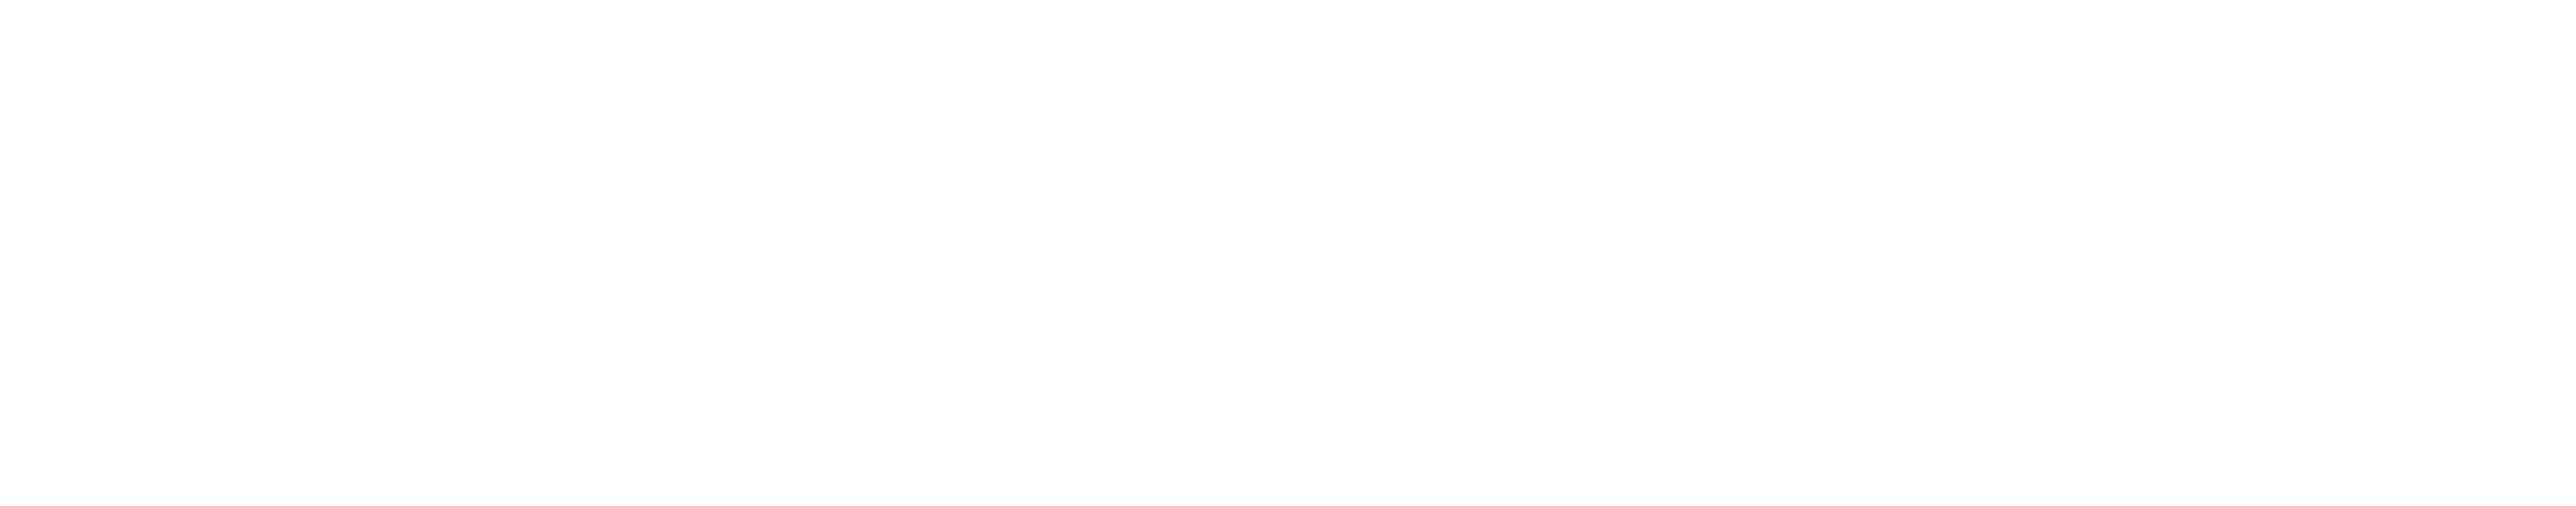 Nerf Logo Transparent - Matrix Colore Capelli Senza Ammoniaca (8090x1934), Png Download